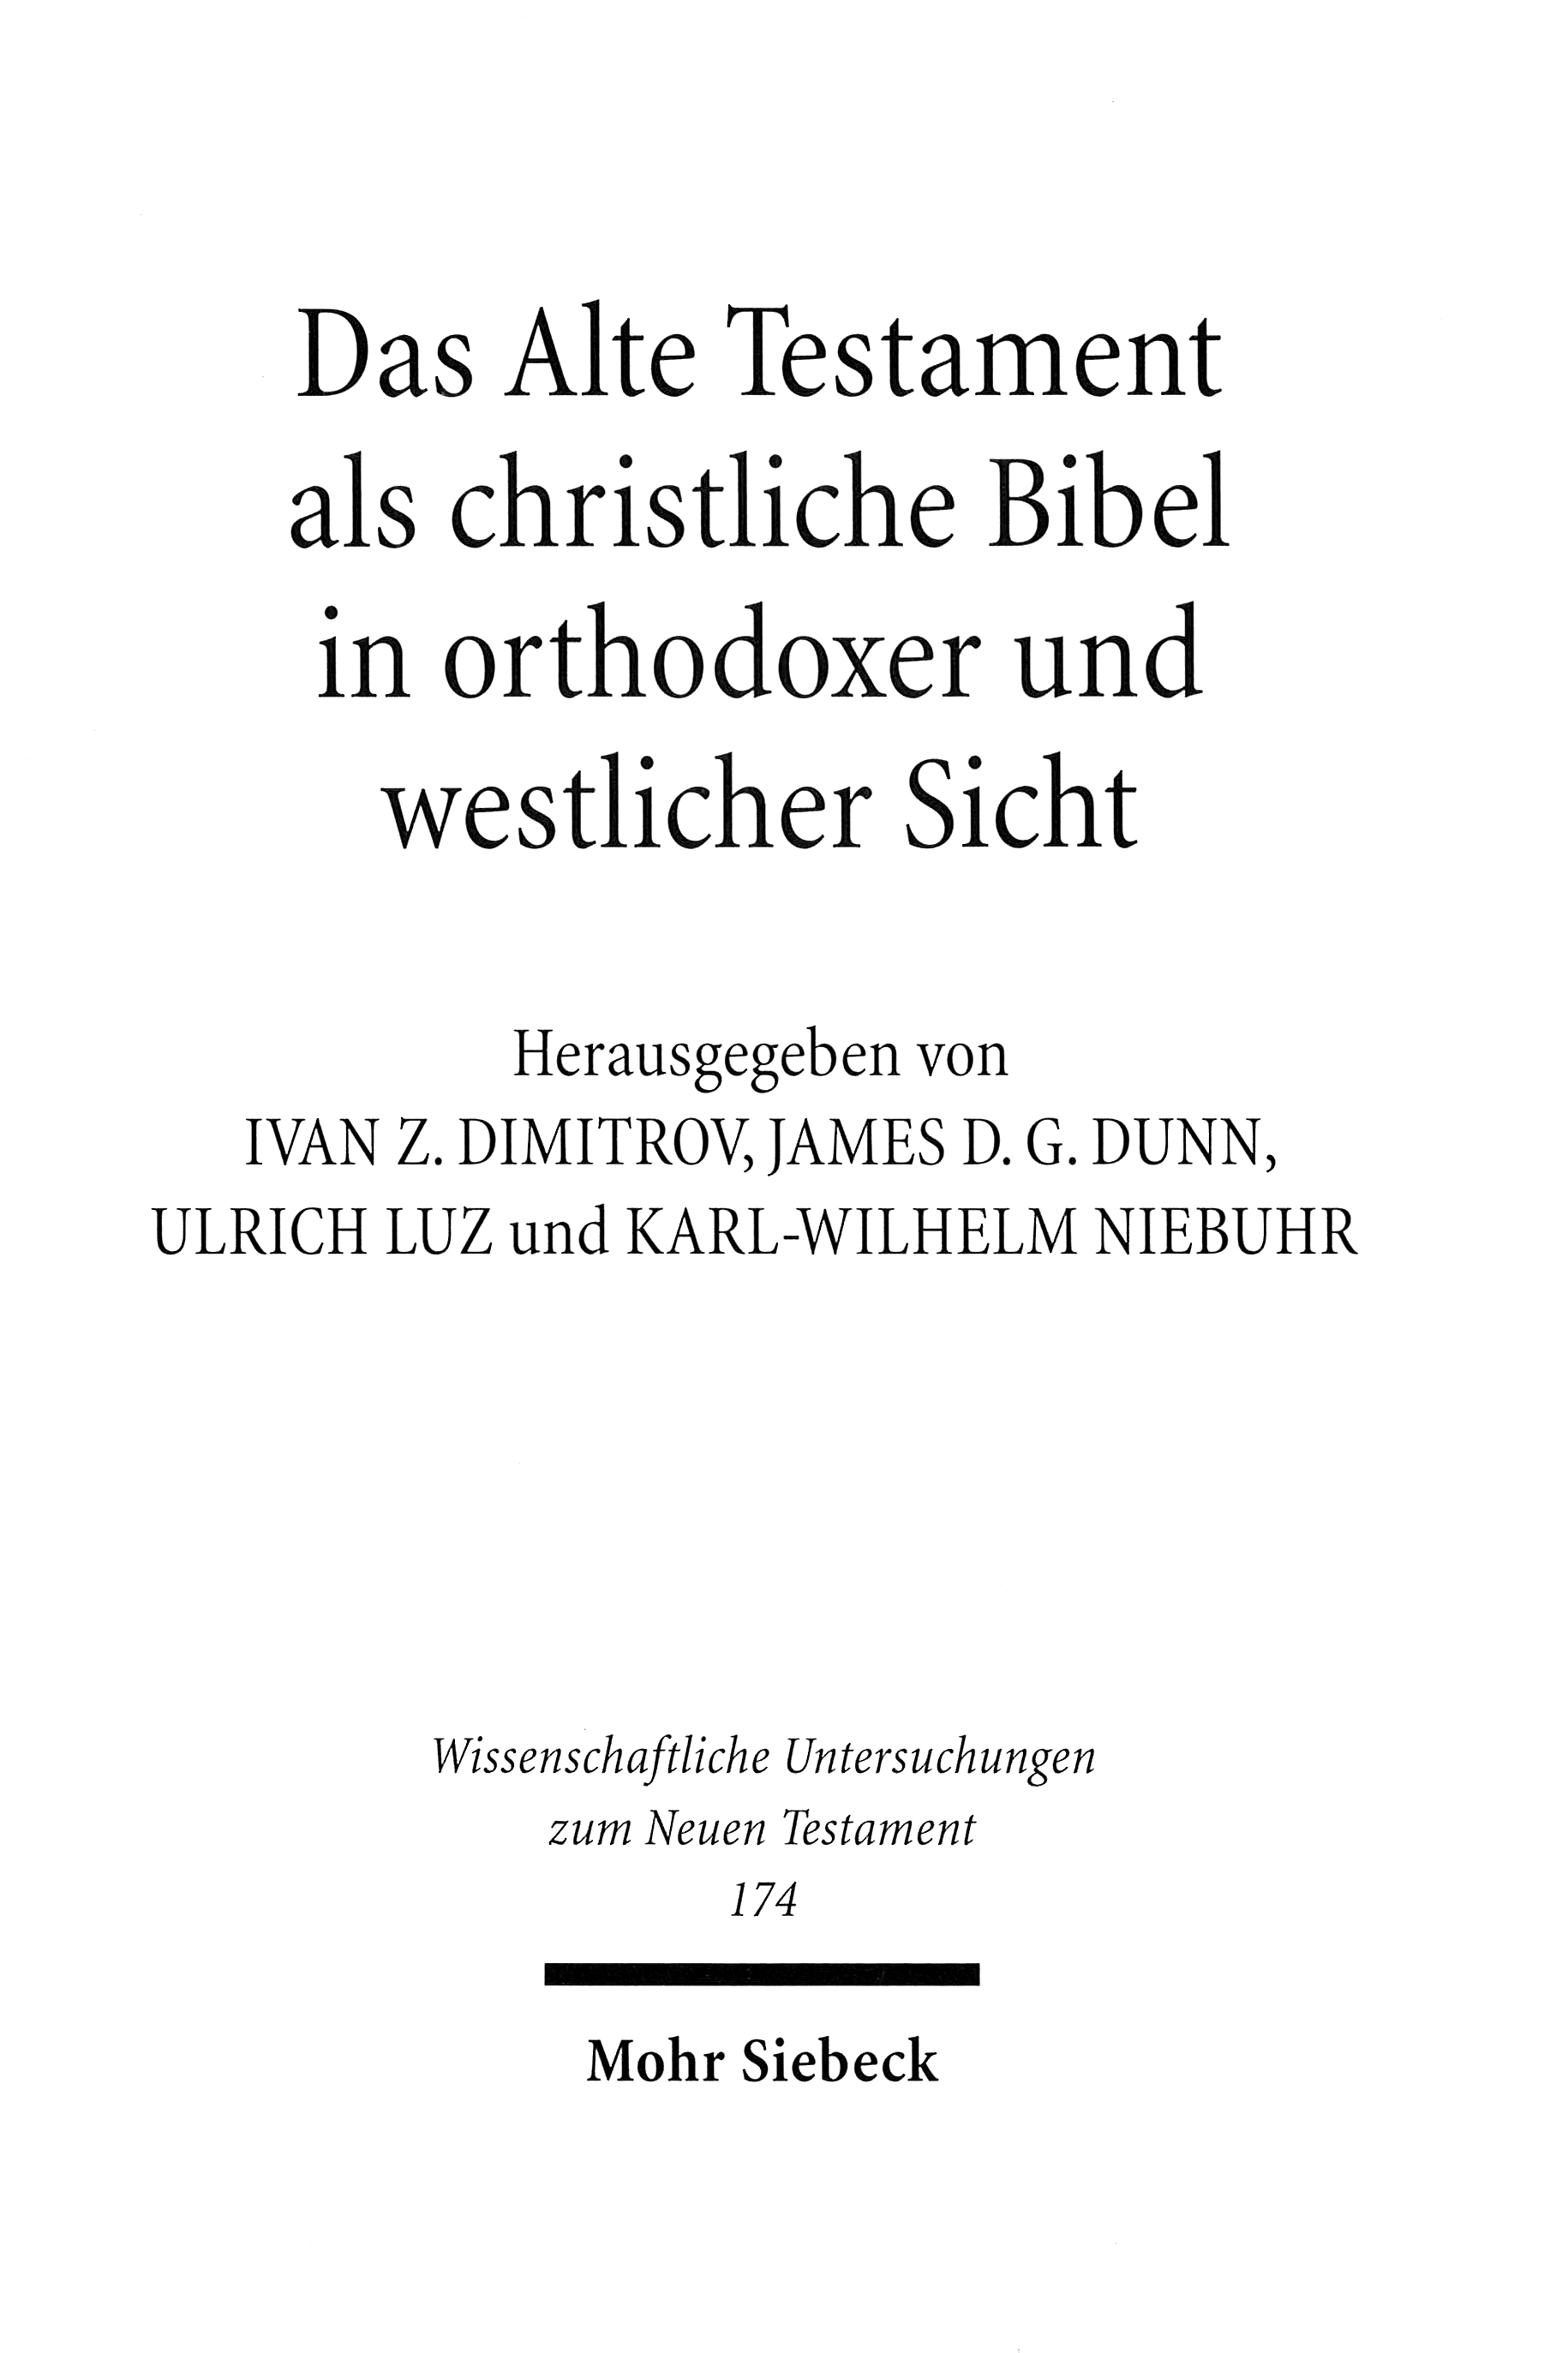 2001_Alte_Testament_christliche_Bibel_blanc.jpg